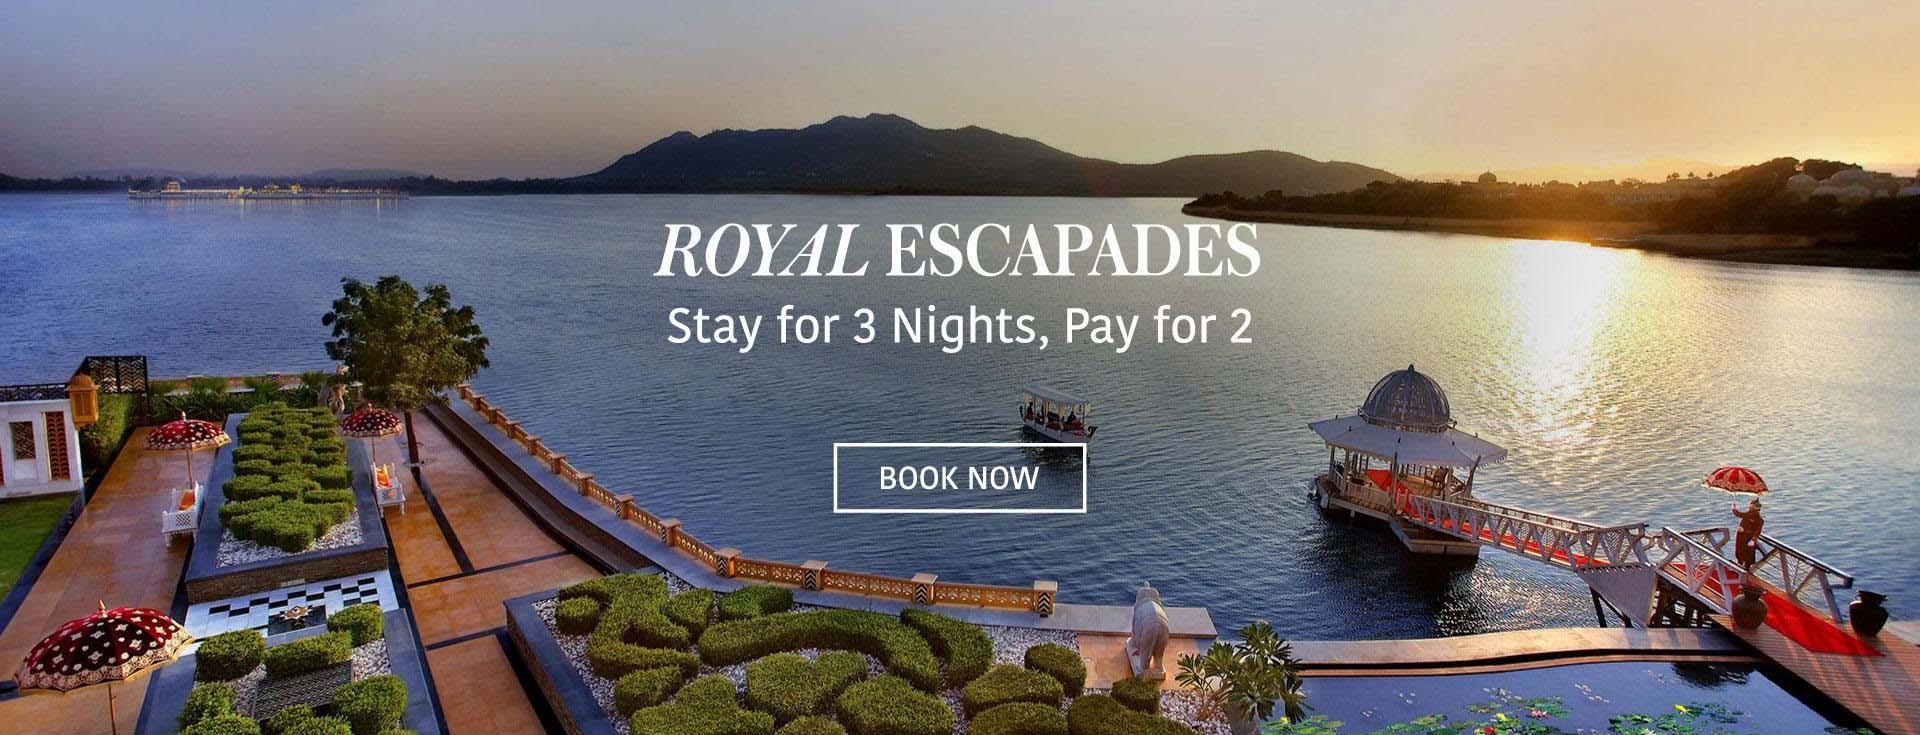 Royal Escapades - Pay 2 Stay 3 at The Leela Palace Udaipur